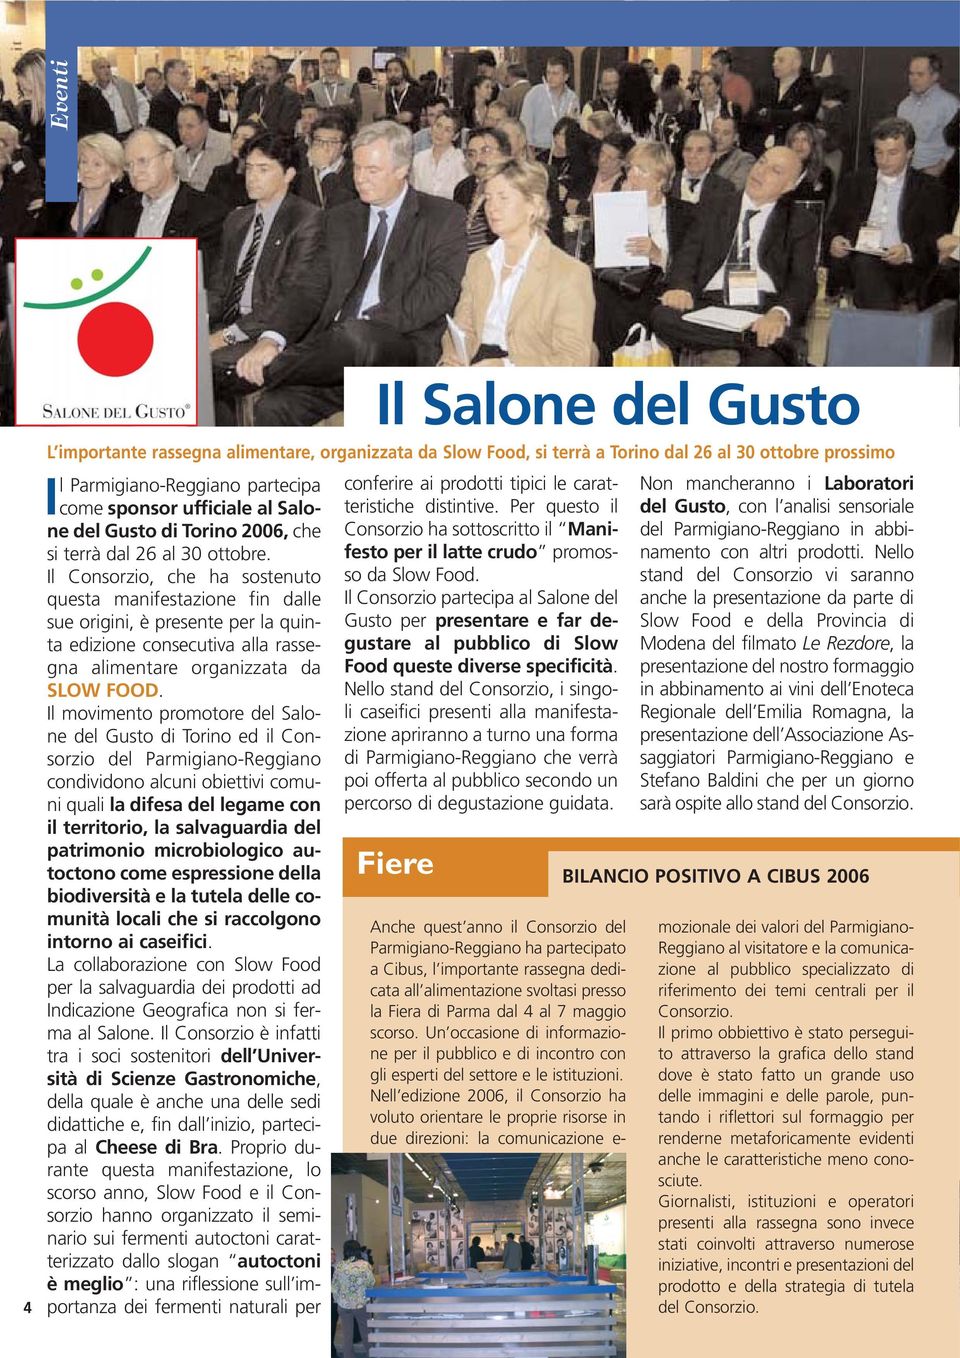 Per questo il del Gusto, con l analisi sensoriale Non mancheranno i Laboratori come sponsor ufficiale al Salone del Gusto di Torino 2006, che si terrà dal 26 al 30 ottobre.